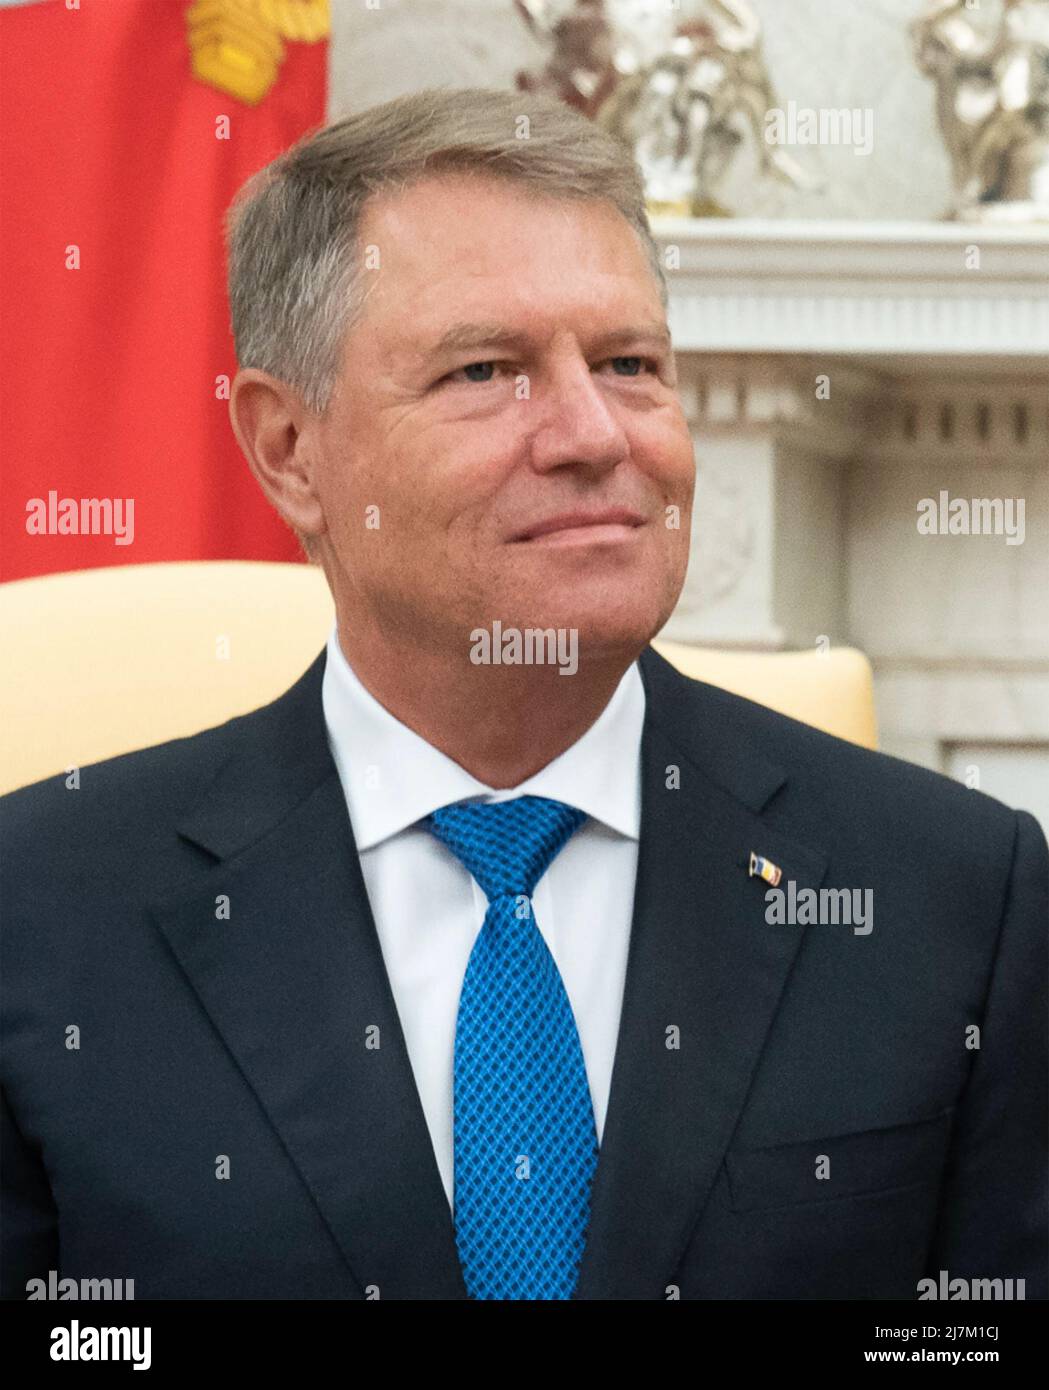 KLAUS IOHANNIS político rumano en agosto de 2019. Foto: La Casa Blanca Foto de stock